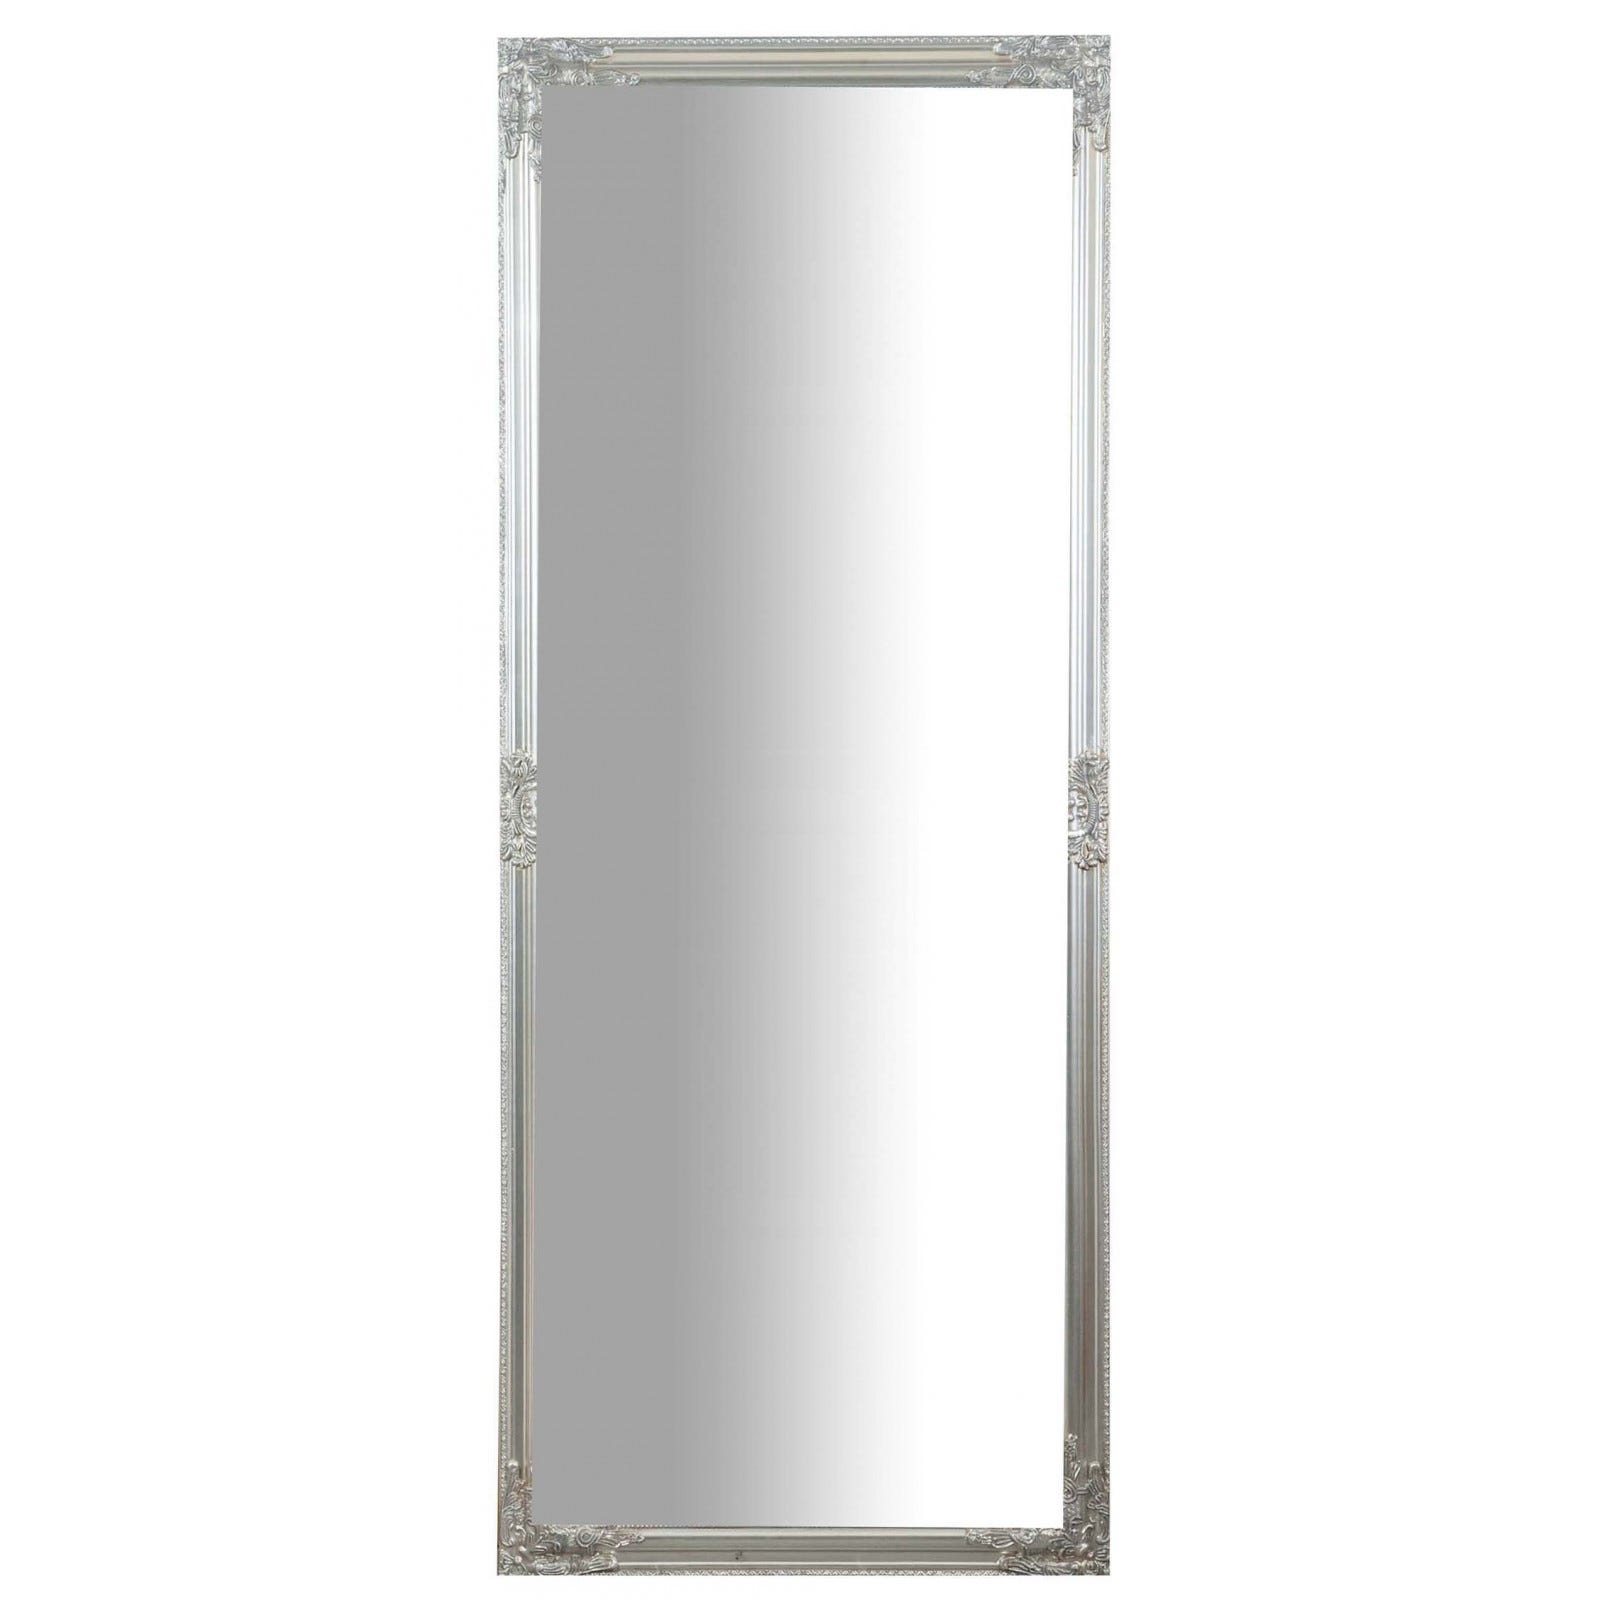 Specchio da parete lungo 180 x 72 x 4 cm, Specchio grande, Specchio  camera da letto, Specchio shabby chic, Specchio parete lungo